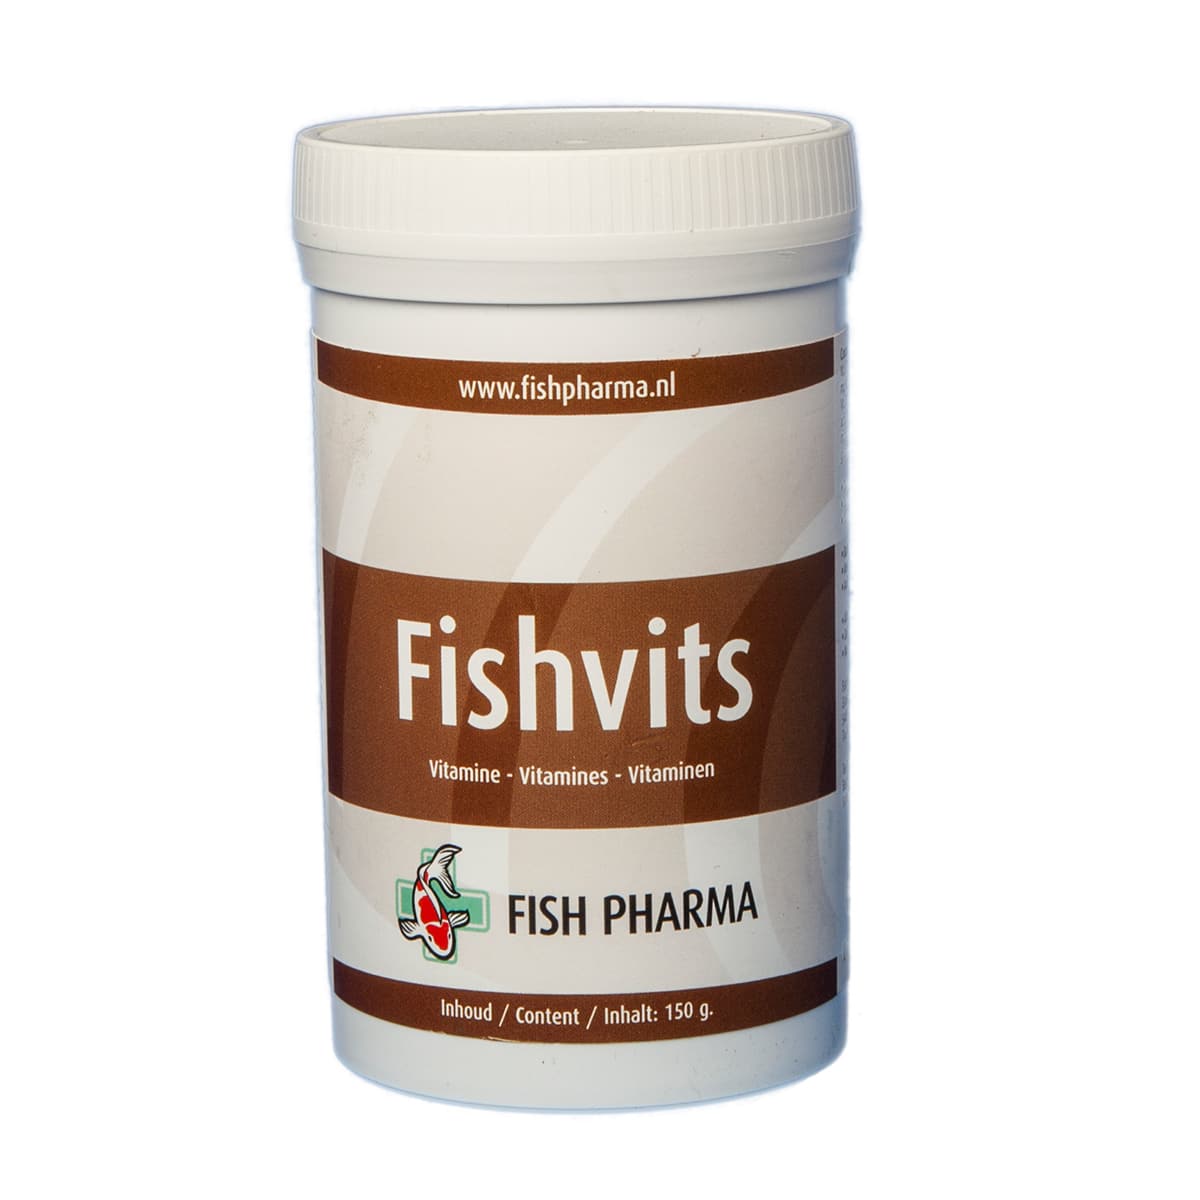 Fish Pharma Fishvits-1